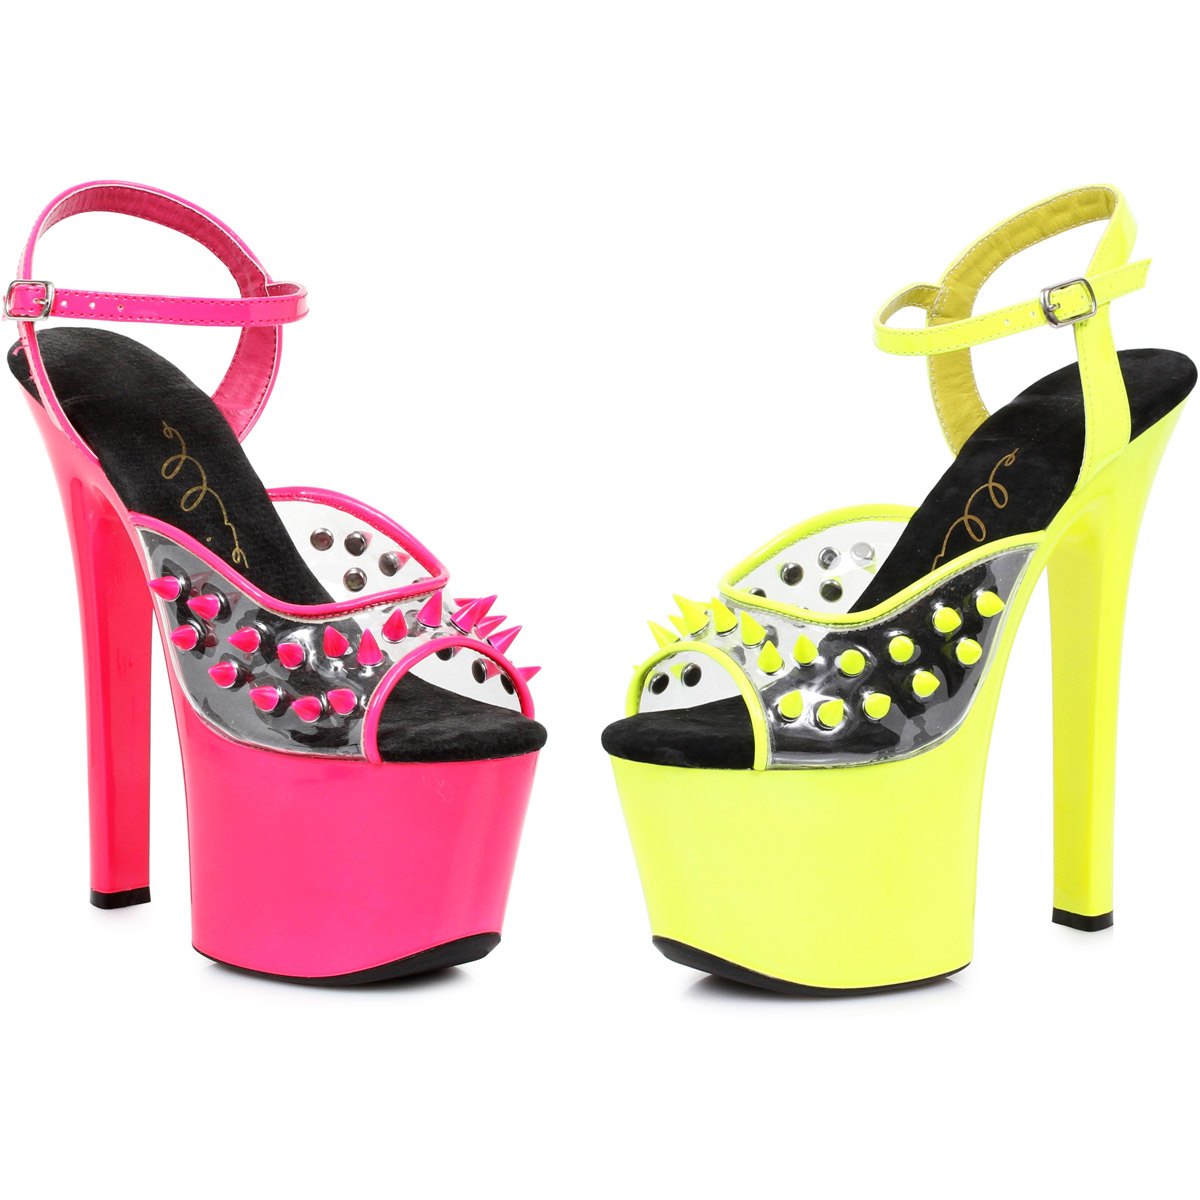 Zapatos Spike con tacones altos para mujer adultos 711/SOLAR eBay